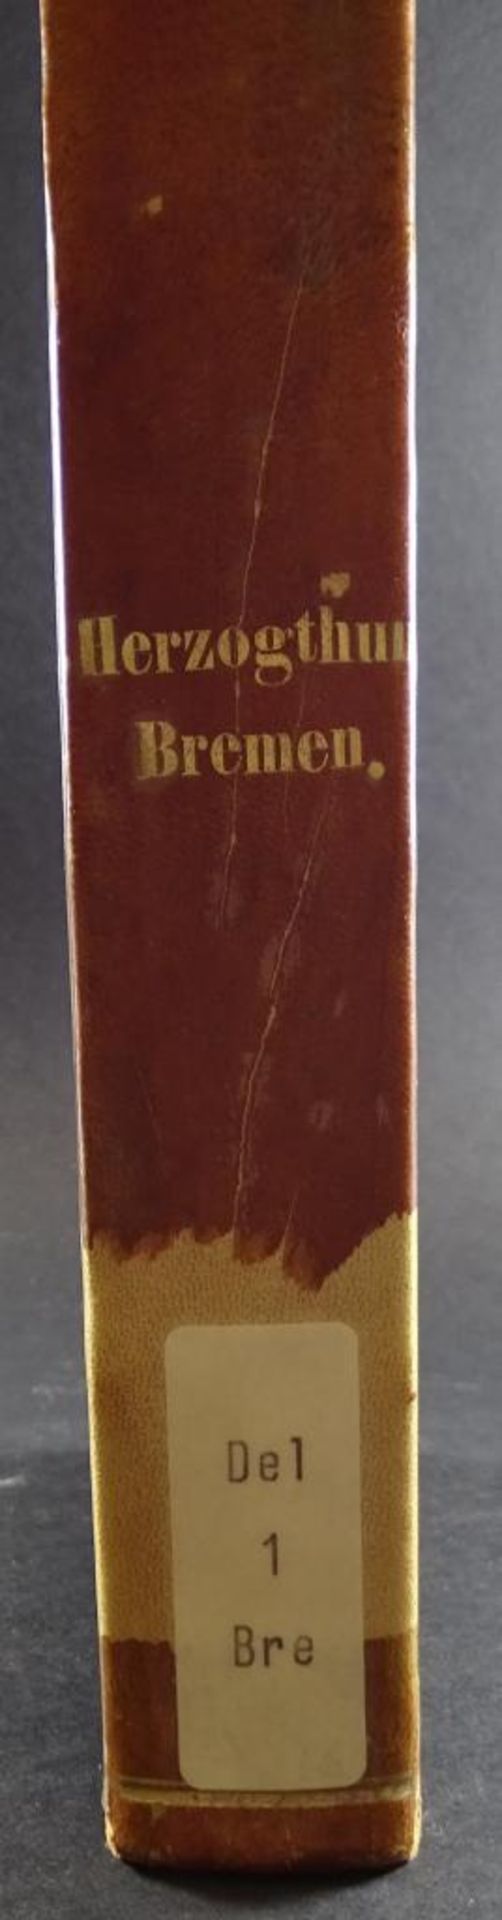 Herzogthum Bremen, 1864,jüngere Geschichte,2 Bände in einem,guter Zusta - Bild 2 aus 8